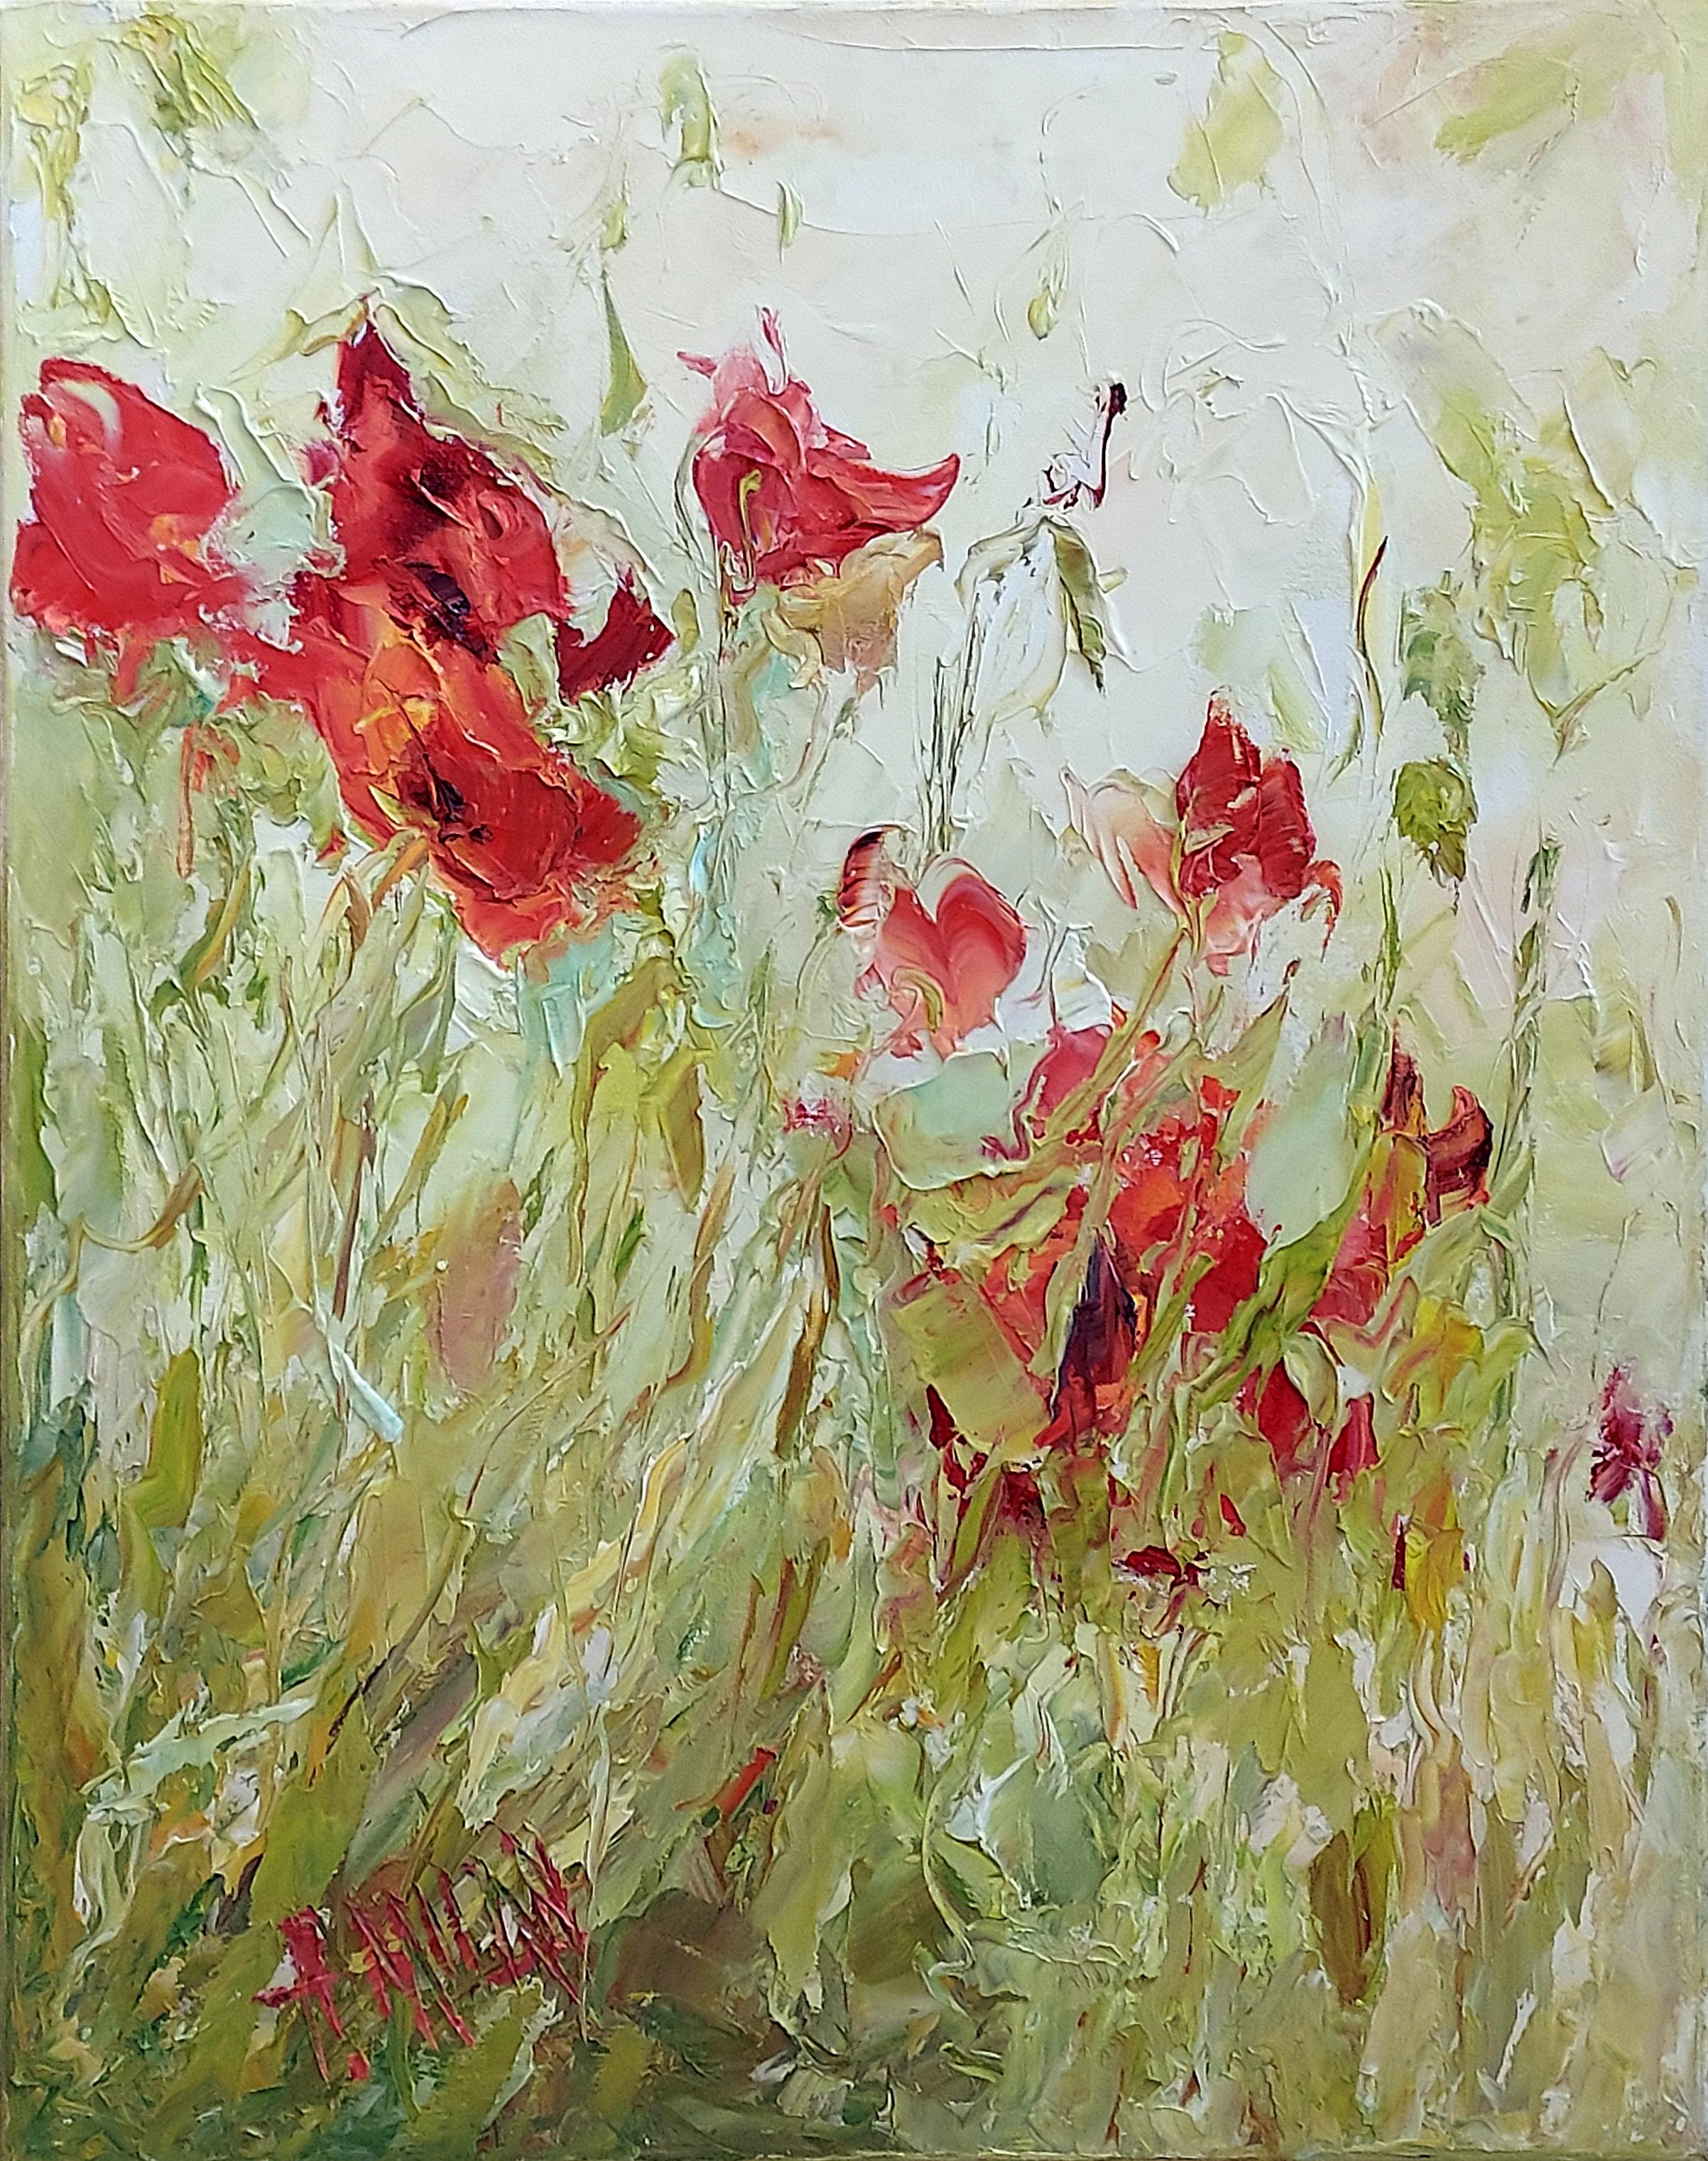 Henrietta Milan, "Poppy #44", Red Floral Green Garden Landscape Oil Painting 